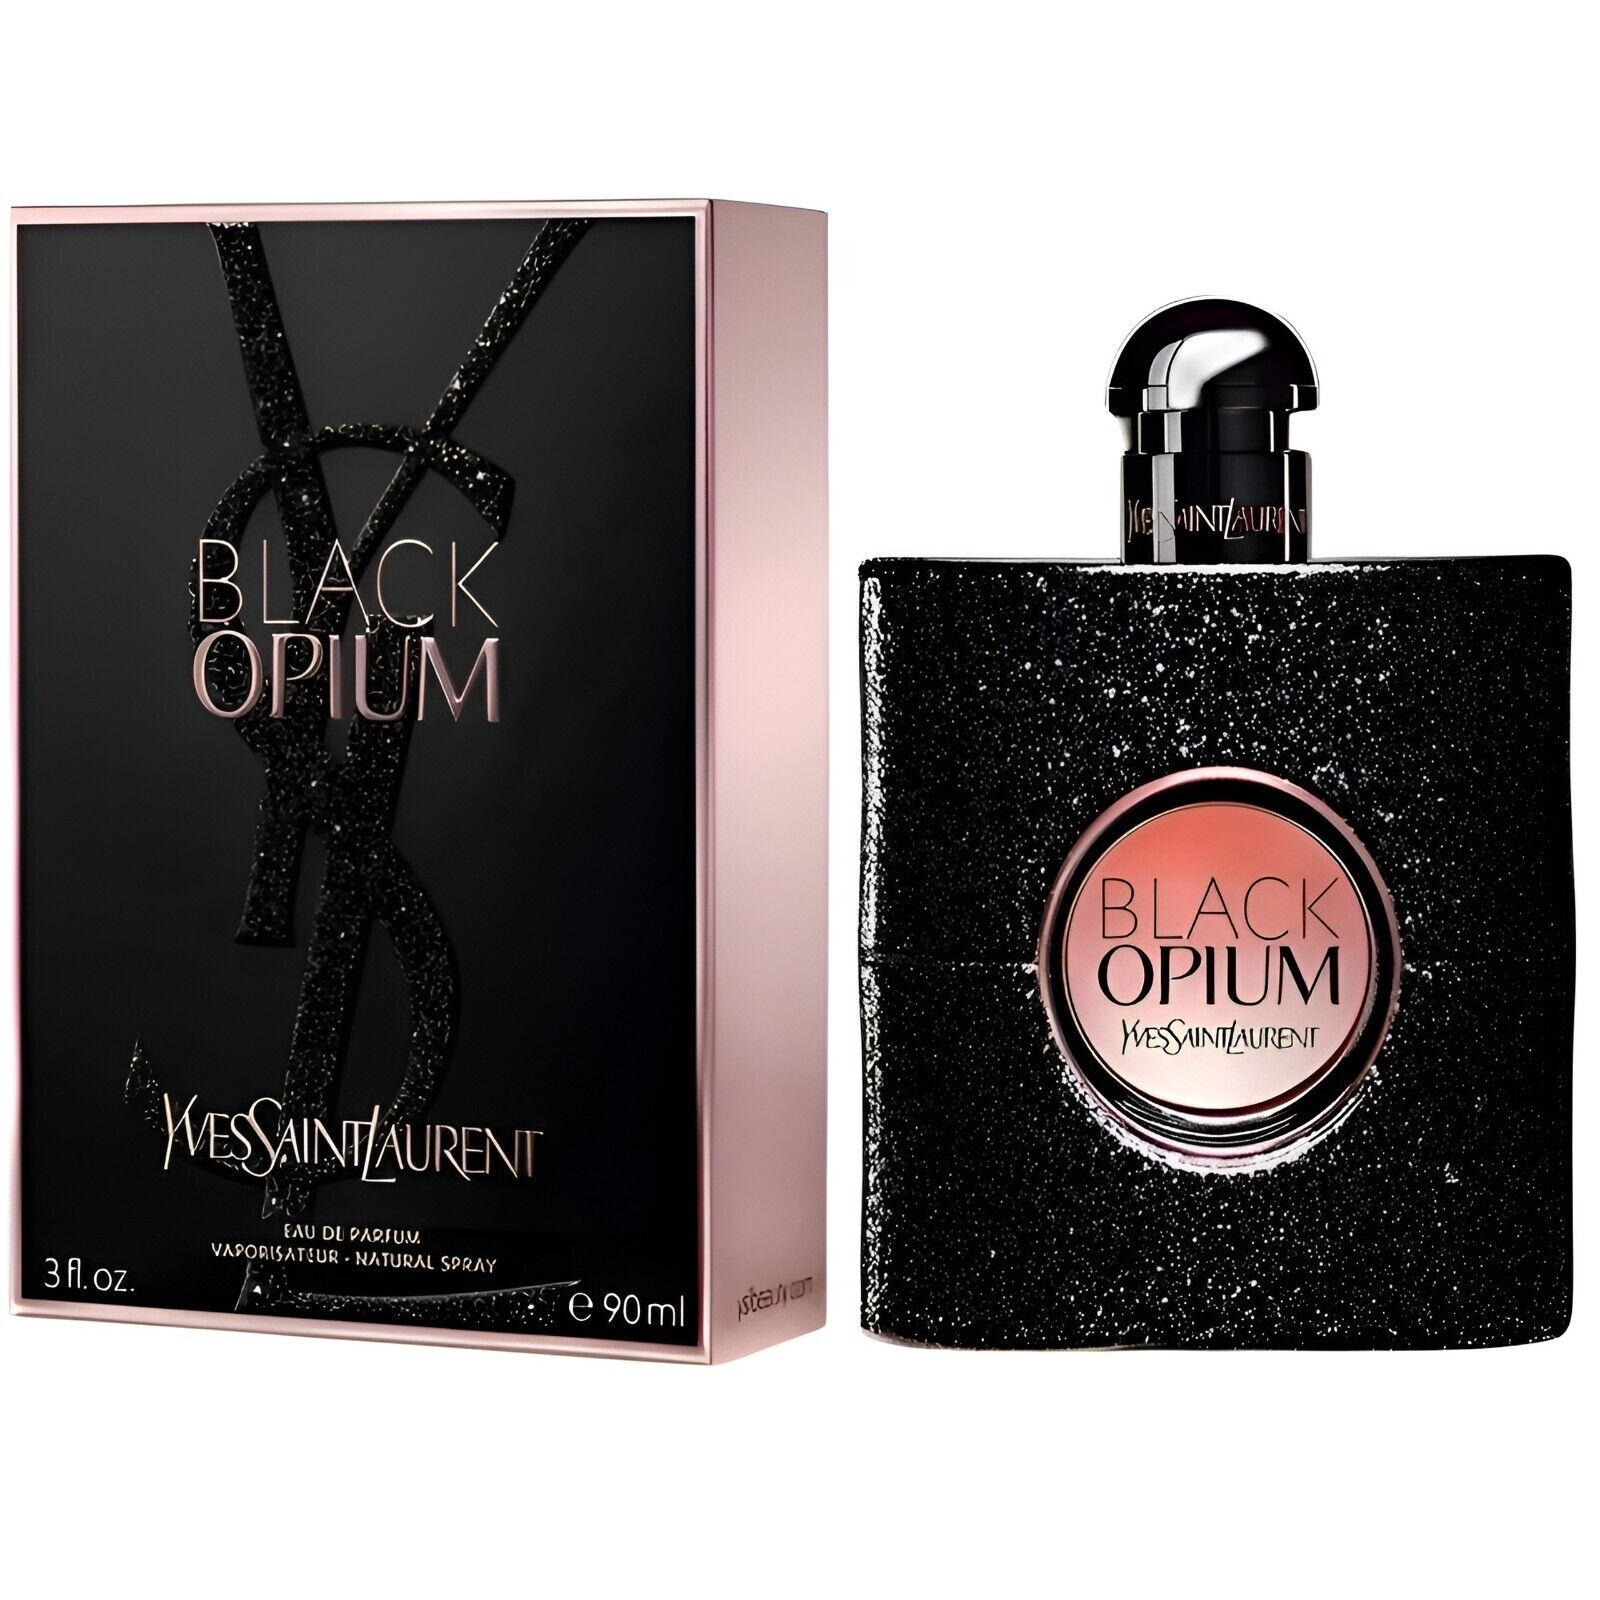 Yves Saint Laurent Black Opium Eau De Parfum 3 oz/ 90 ml for Women